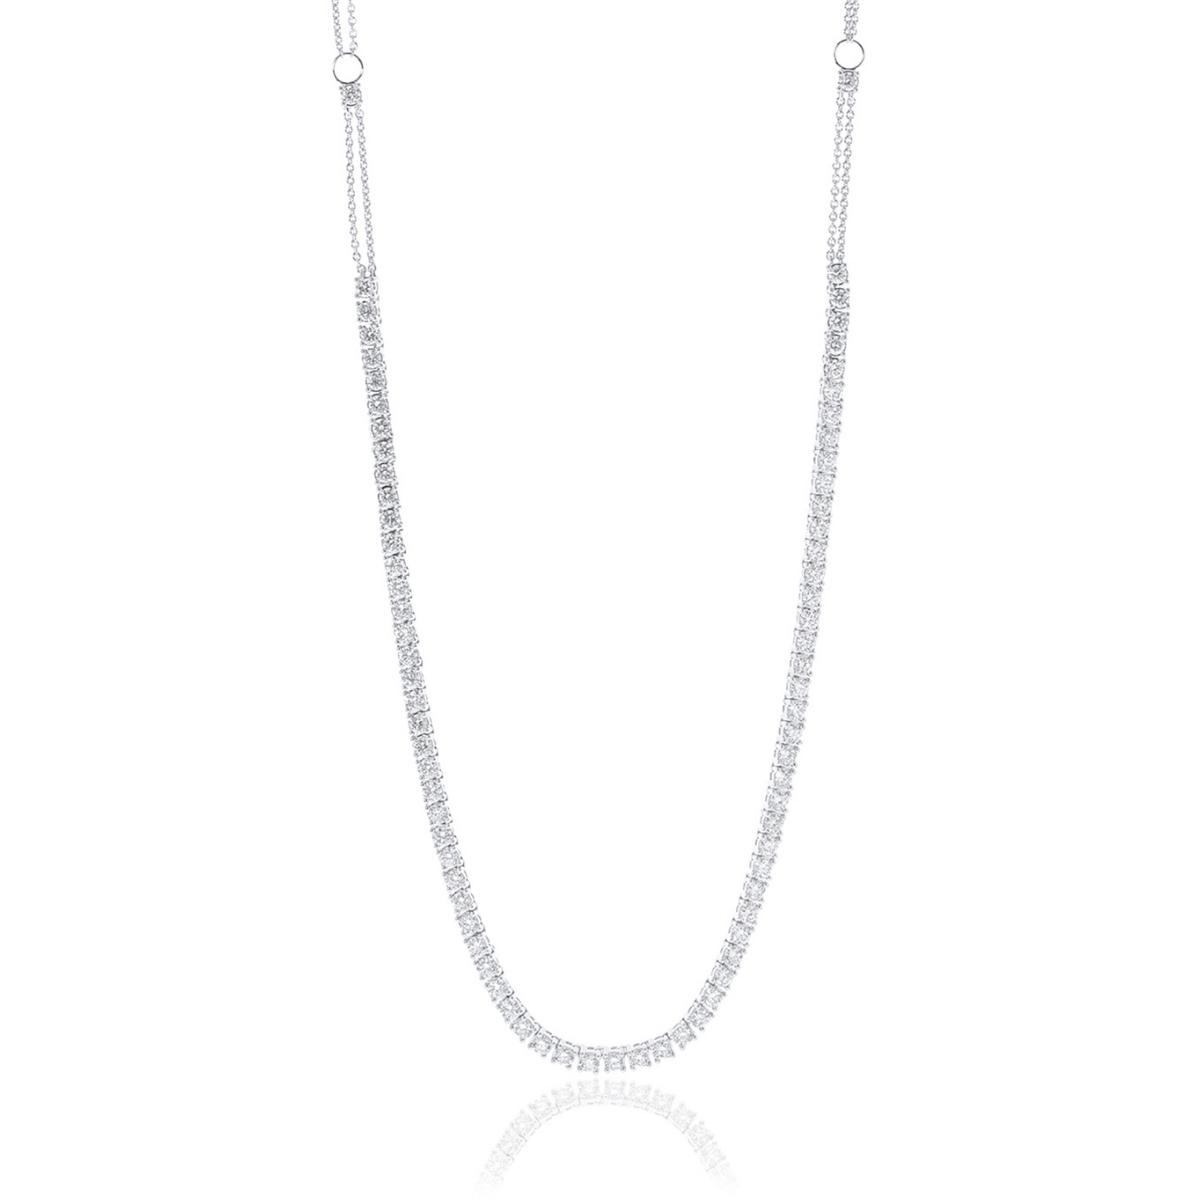 RIVIERA Diamond Necklace 5.5ct